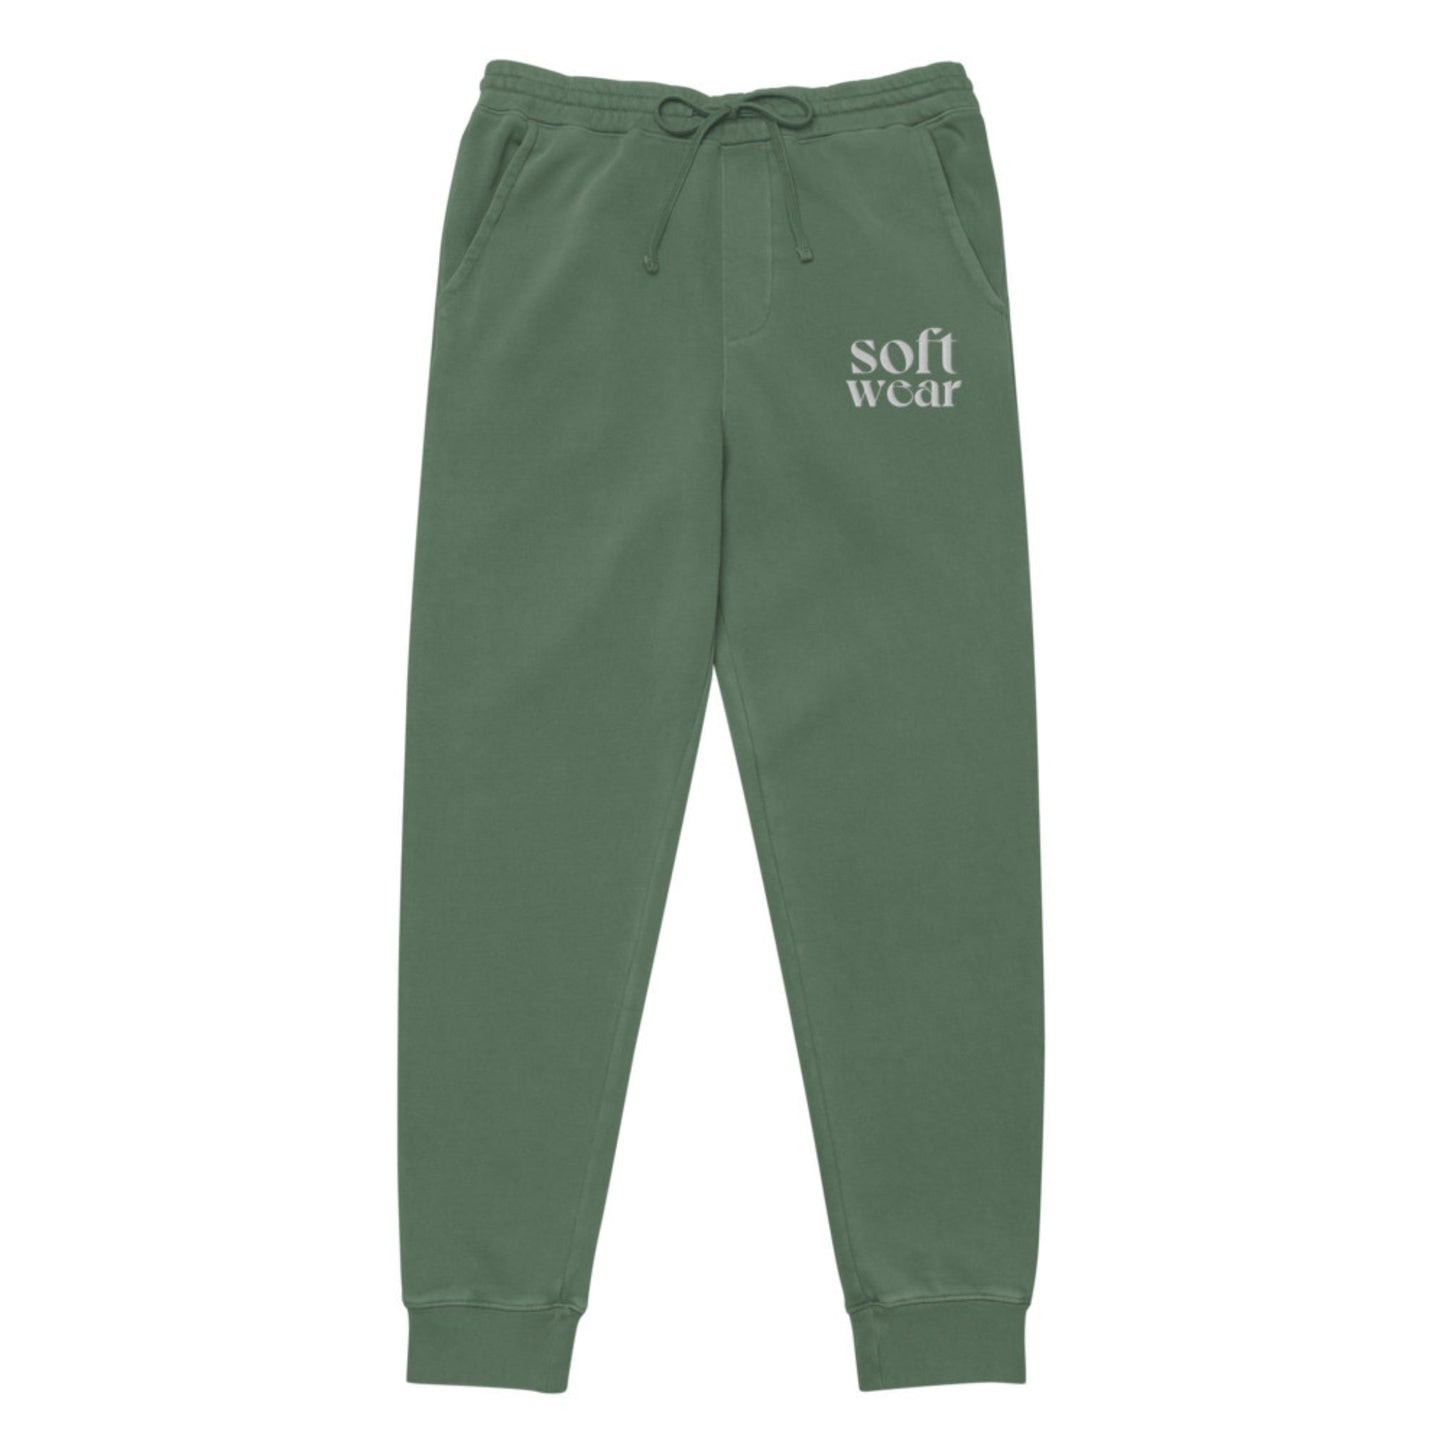 Softwear Sweatpants in Evergreen